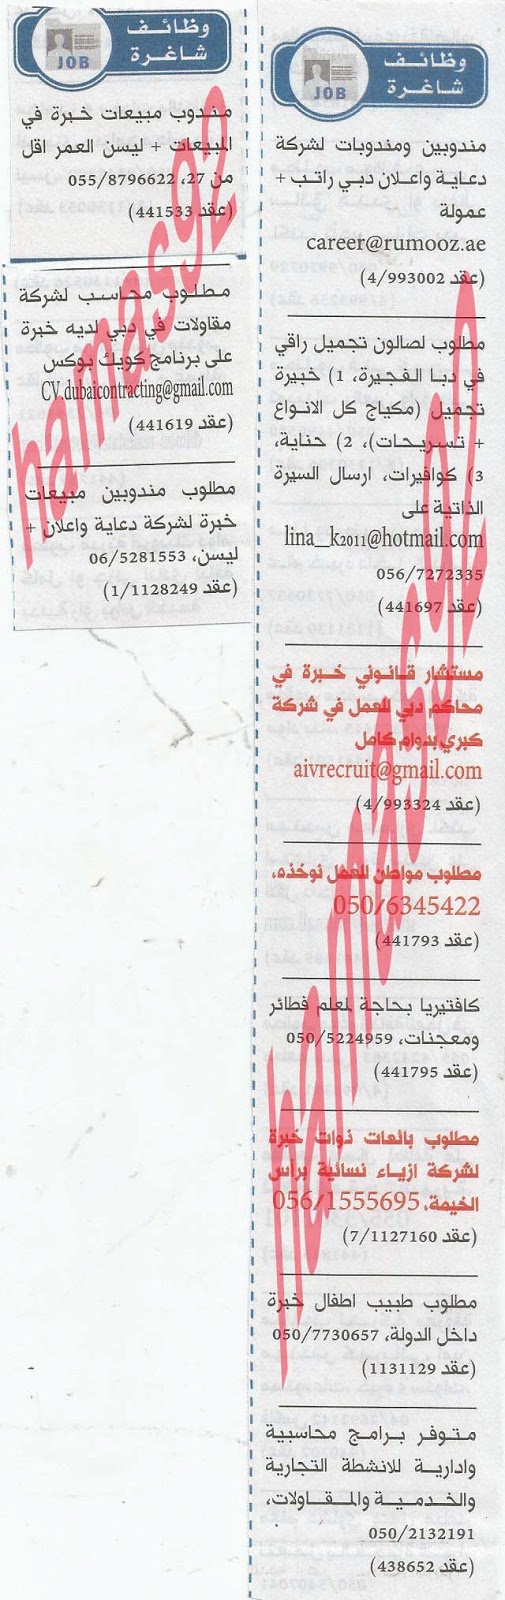 وظائف شاغرة من جريدة الخليج الاماراتية اليوم الاربعاء 8/5/2013 %D8%A7%D9%84%D8%AE%D9%84%D9%8A%D8%AC+4